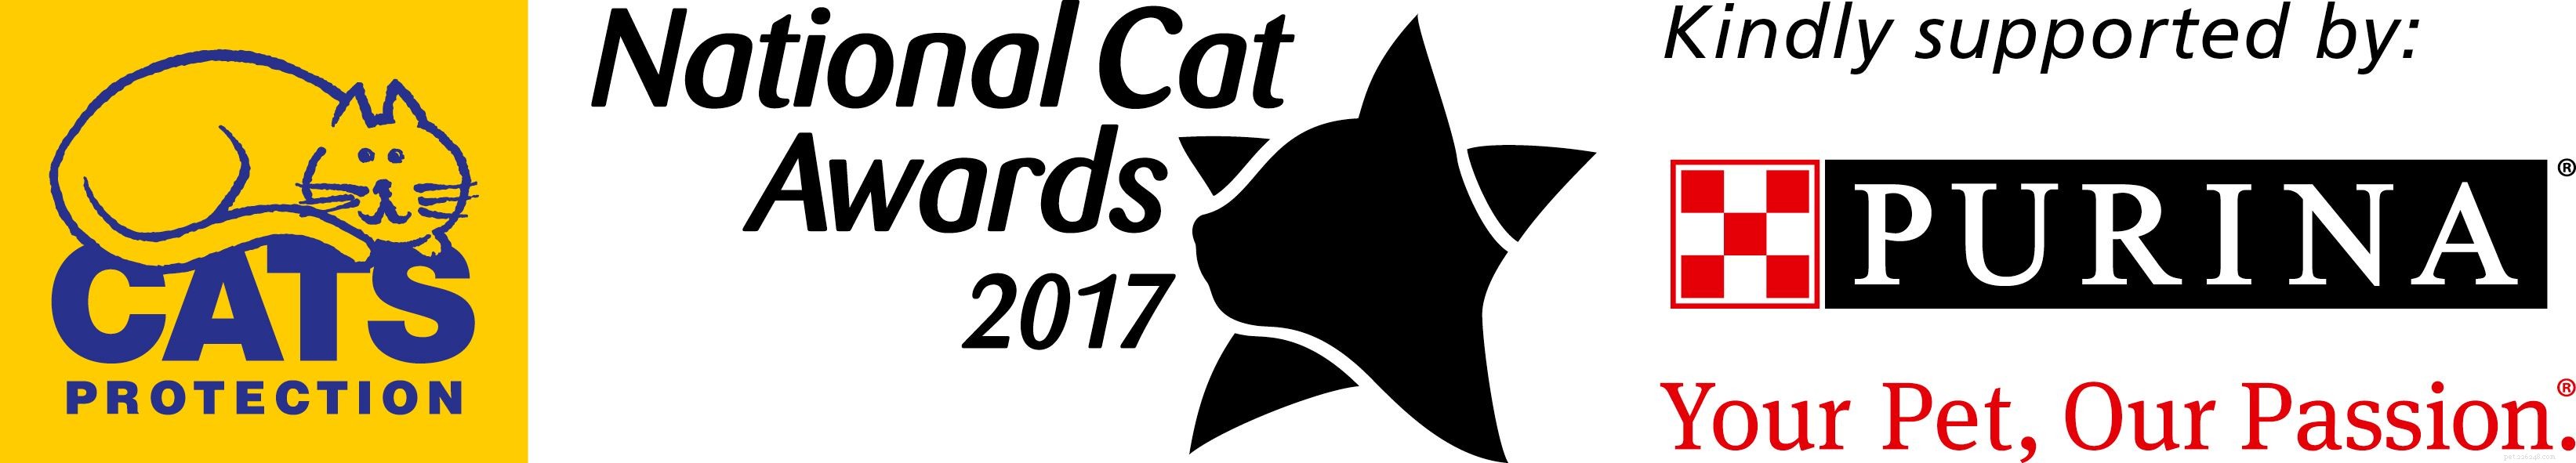 Познакомьтесь с финалистами в номинации «Выдающийся кот-спасатель» Национальной премии в области кошек 2017!